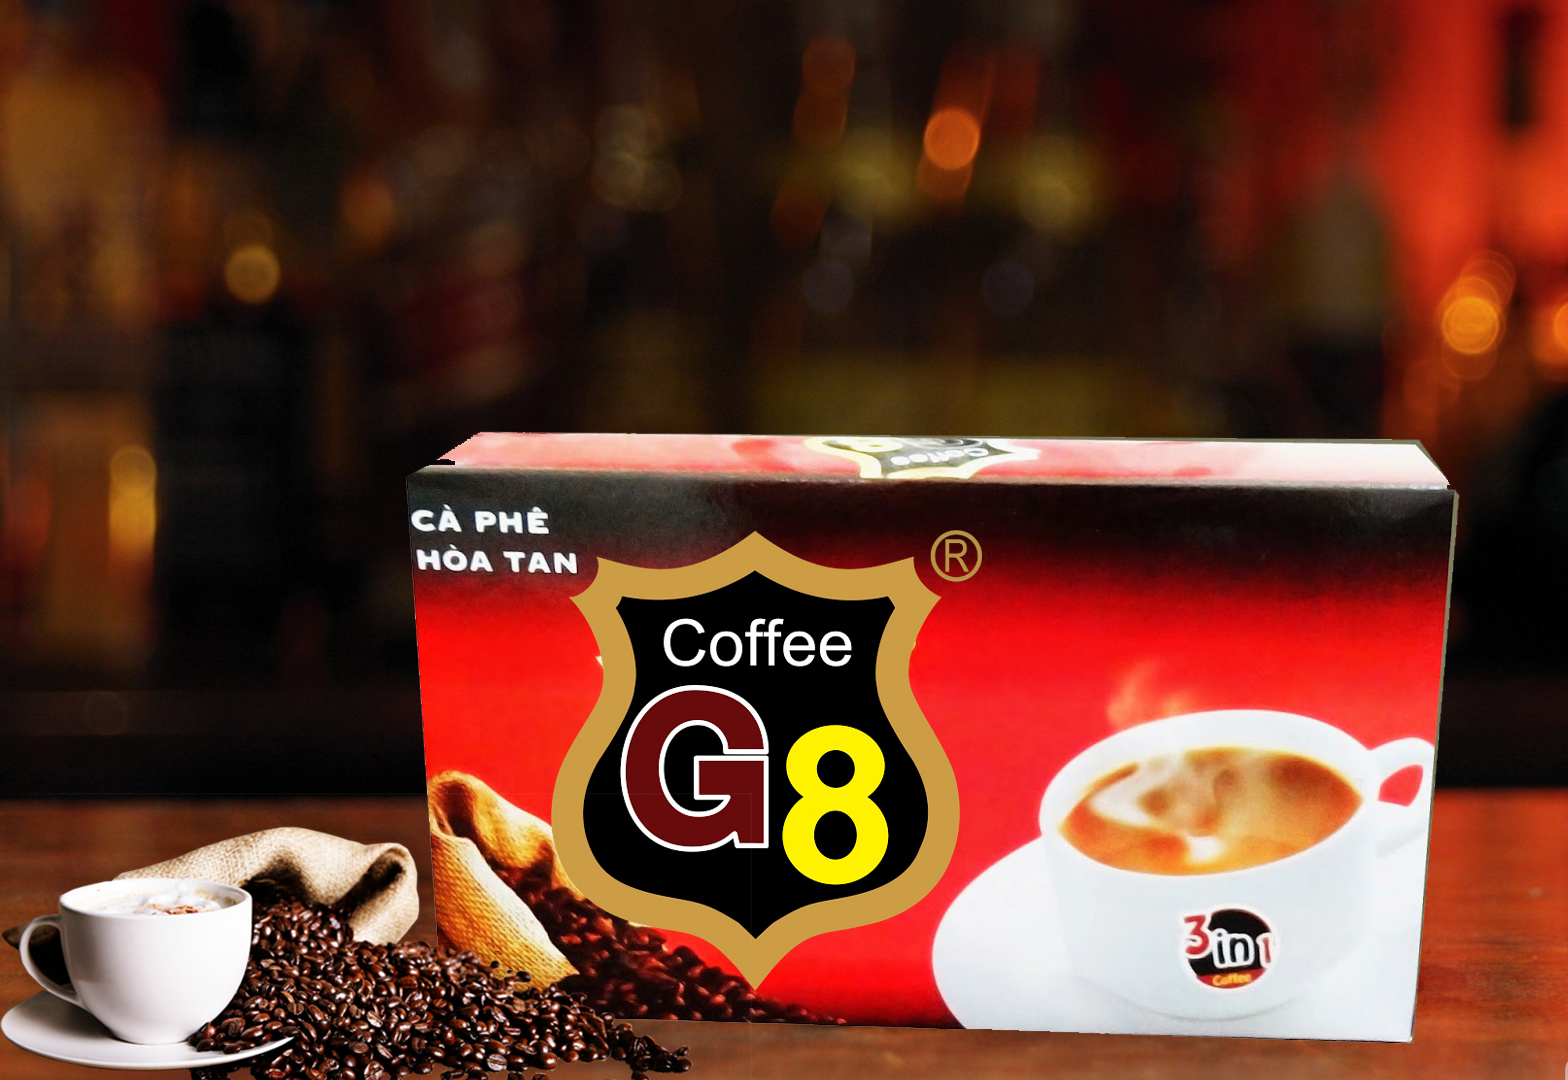 Cà phê hòa tan hay cà phê uống liền (instant coffee)